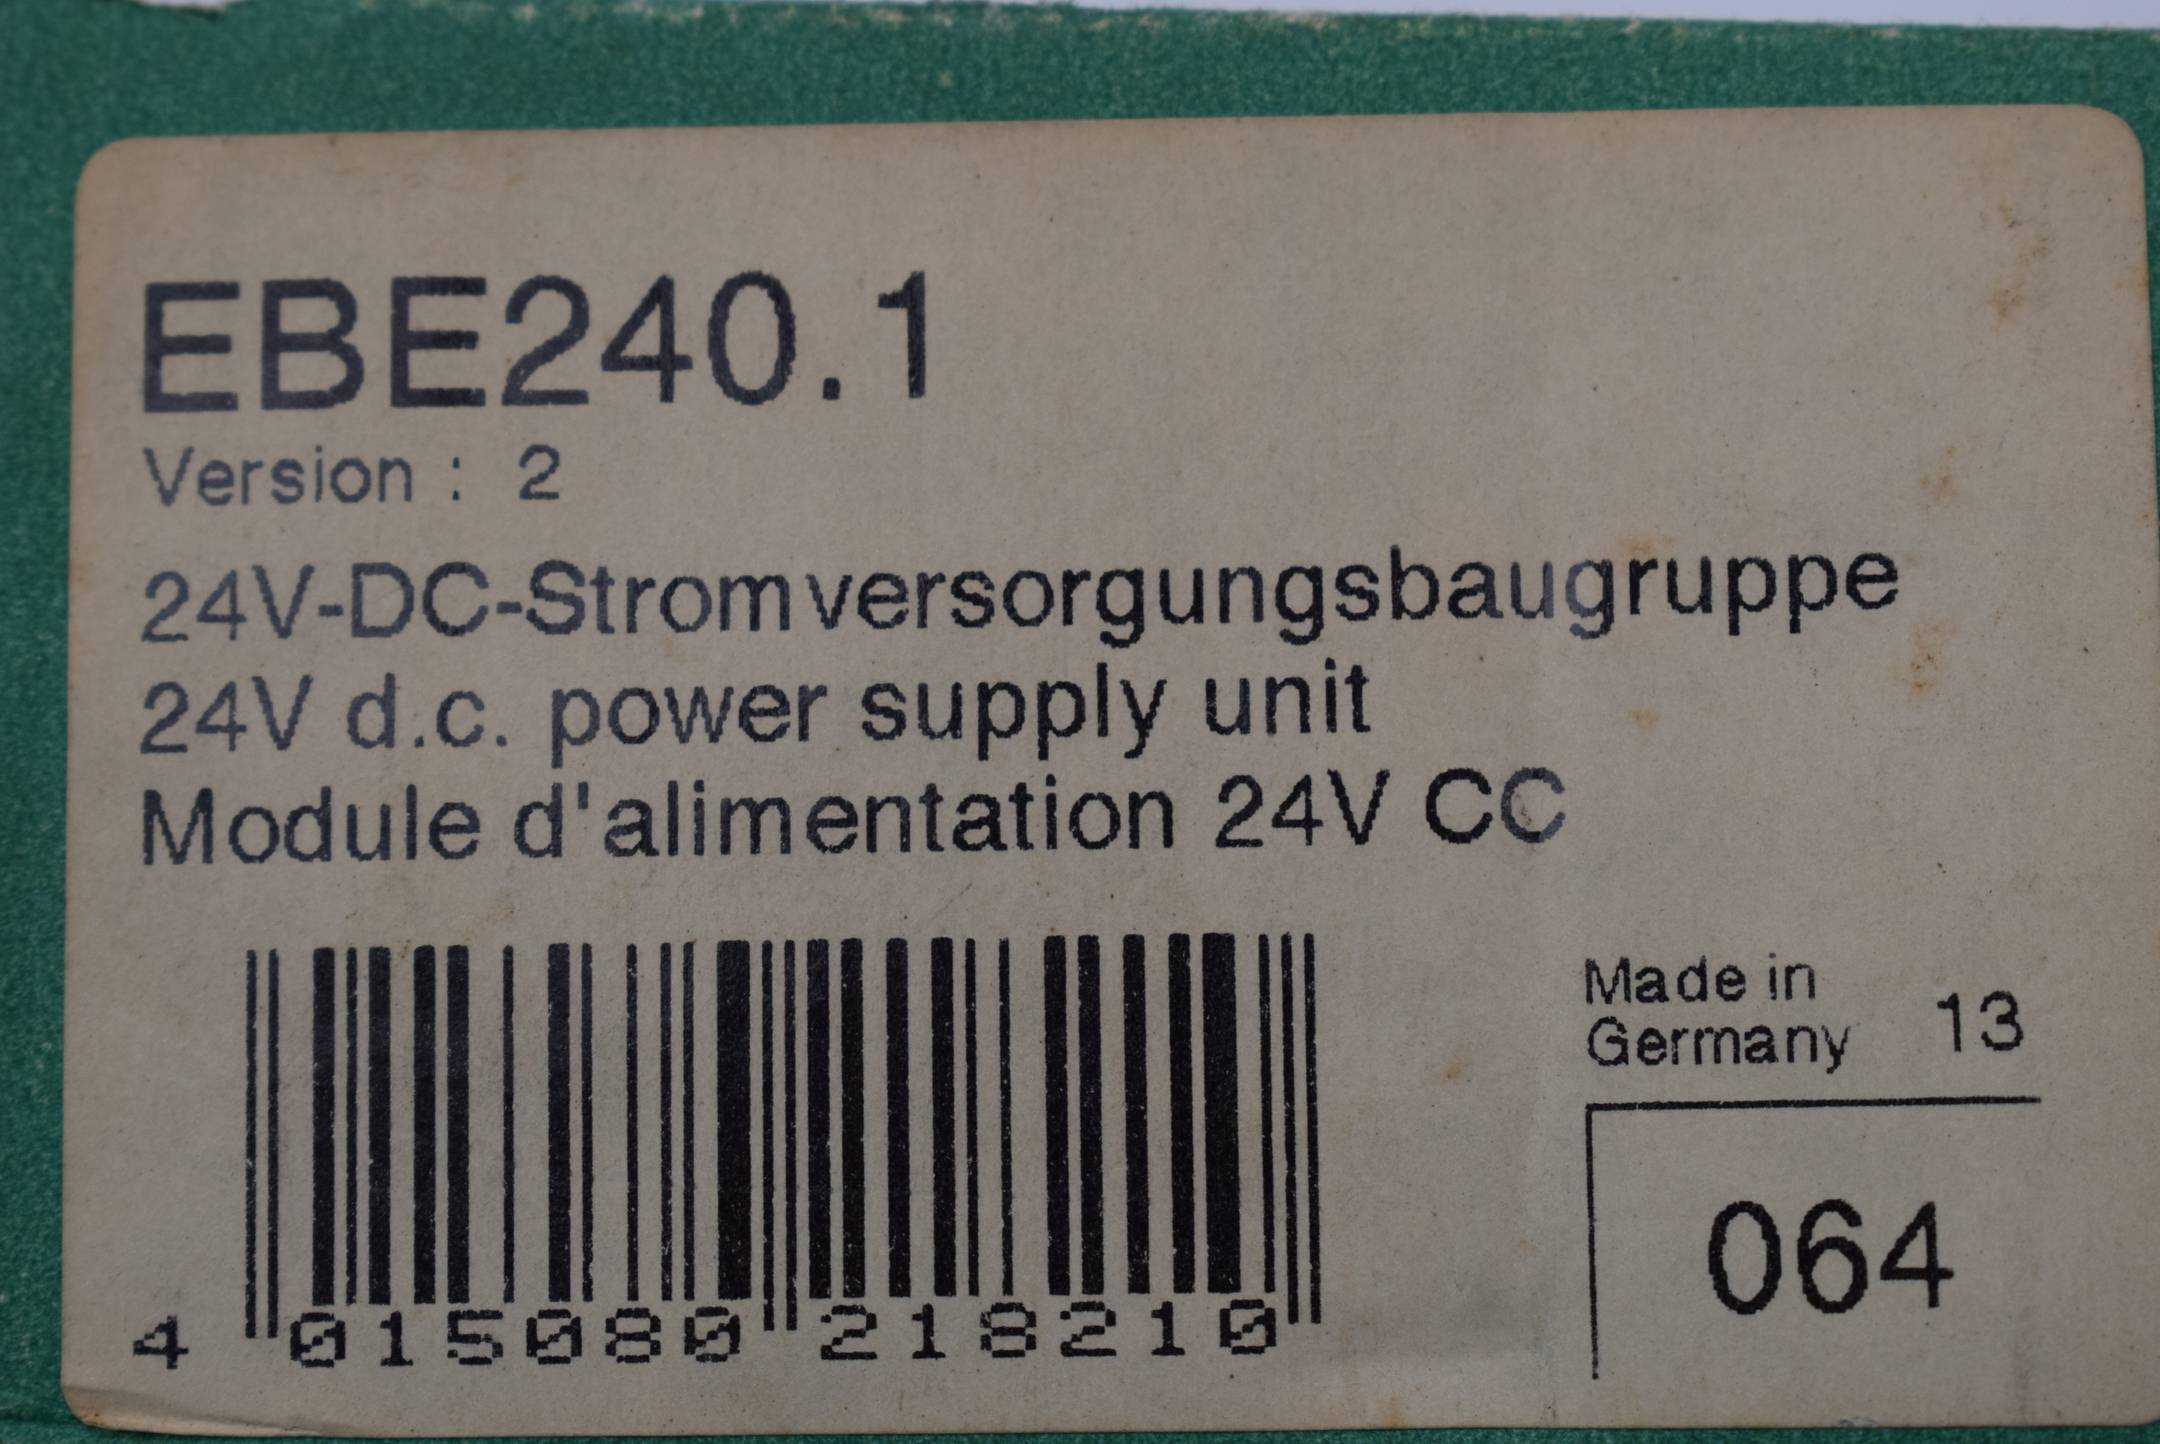 Klöckner Moeller 24V-DC-Stromversorgungungsbaugruppe EBE240.1